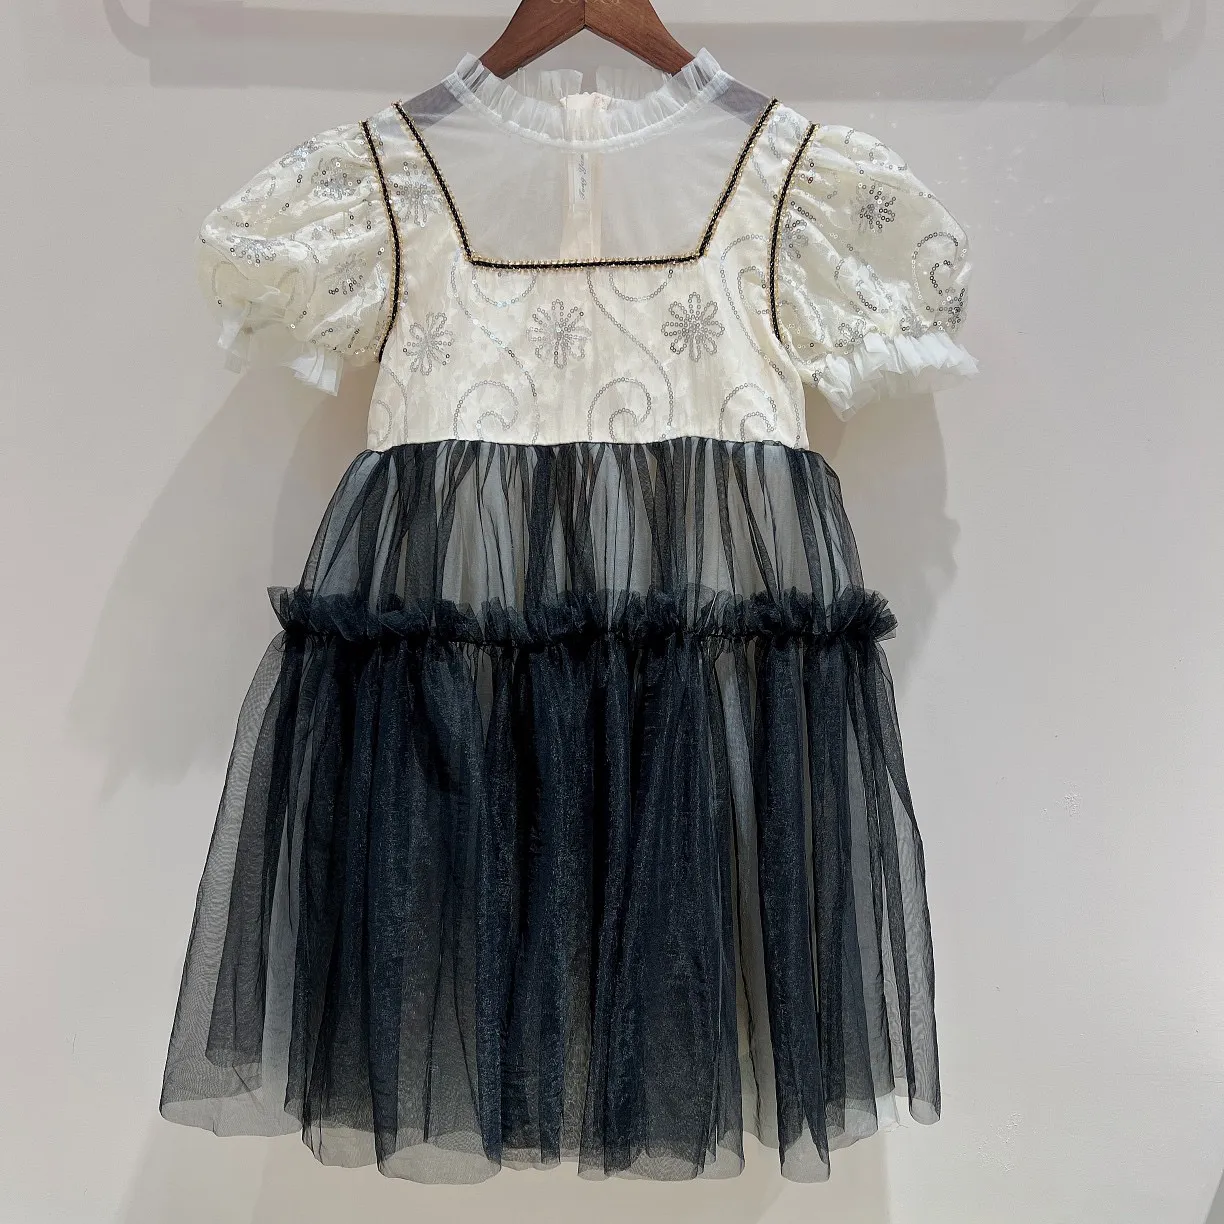 Yaz Çocuk Kız Dantel Elbiseler Moda Bebek Kız çiçekler Baskı Elbise Çocuk Tutu Doğum Günü Giyim